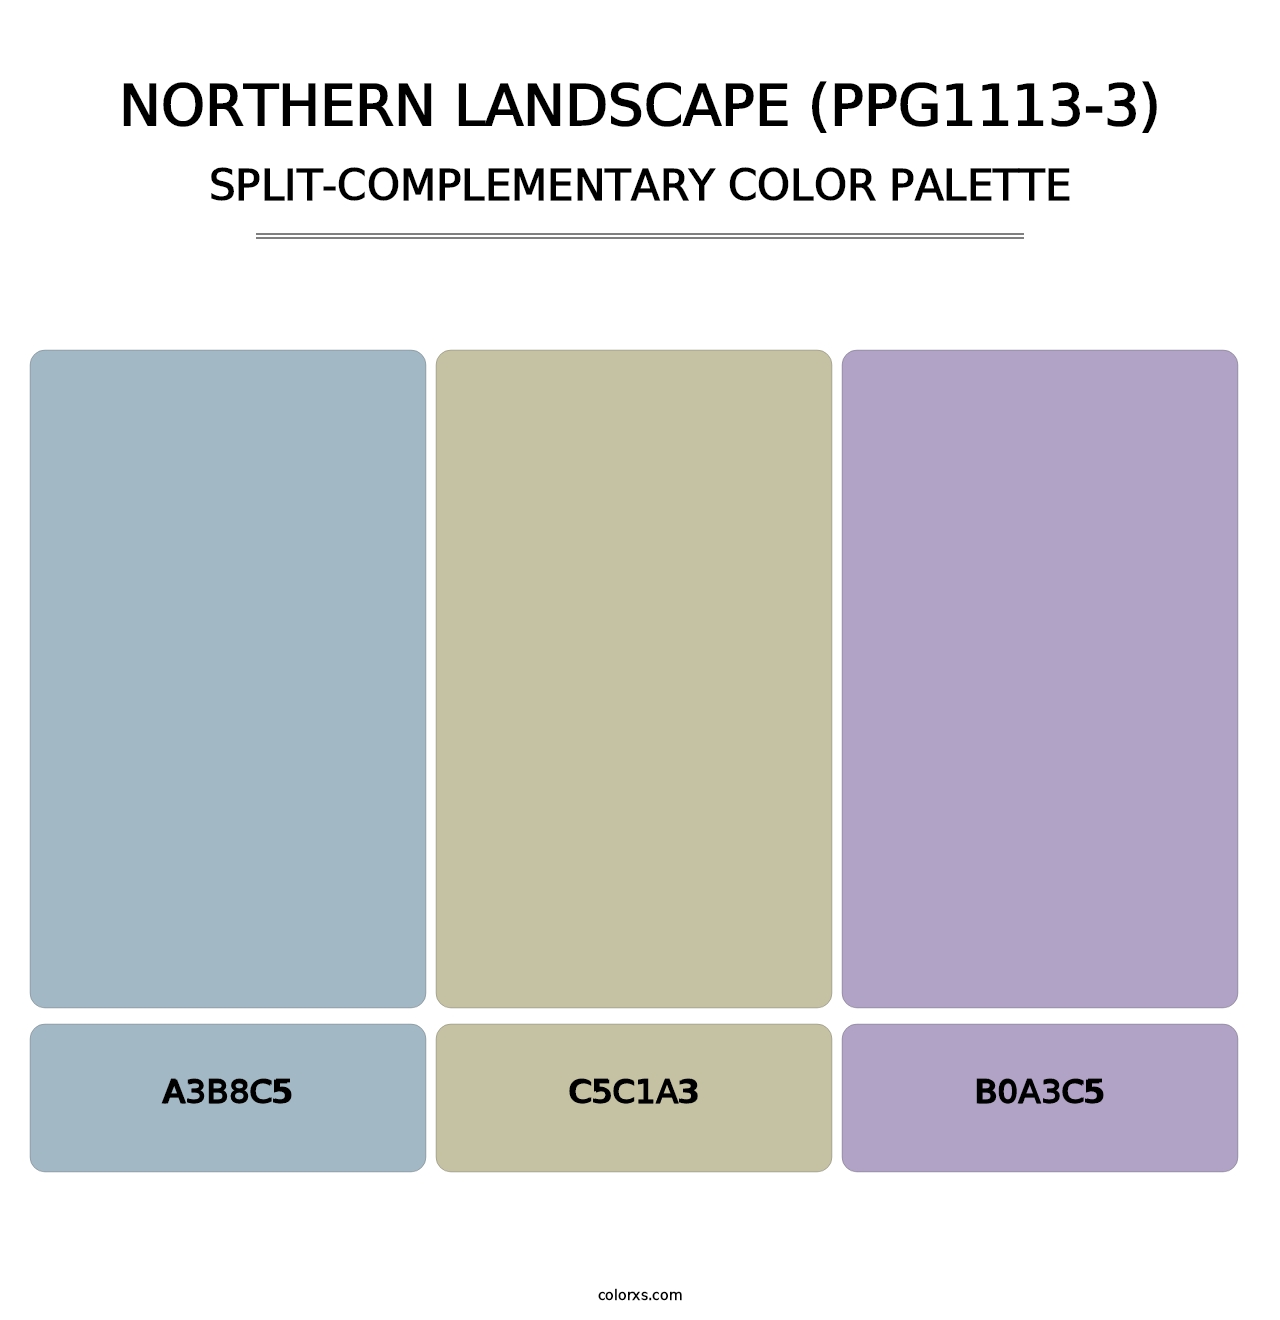 Northern Landscape (PPG1113-3) - Split-Complementary Color Palette